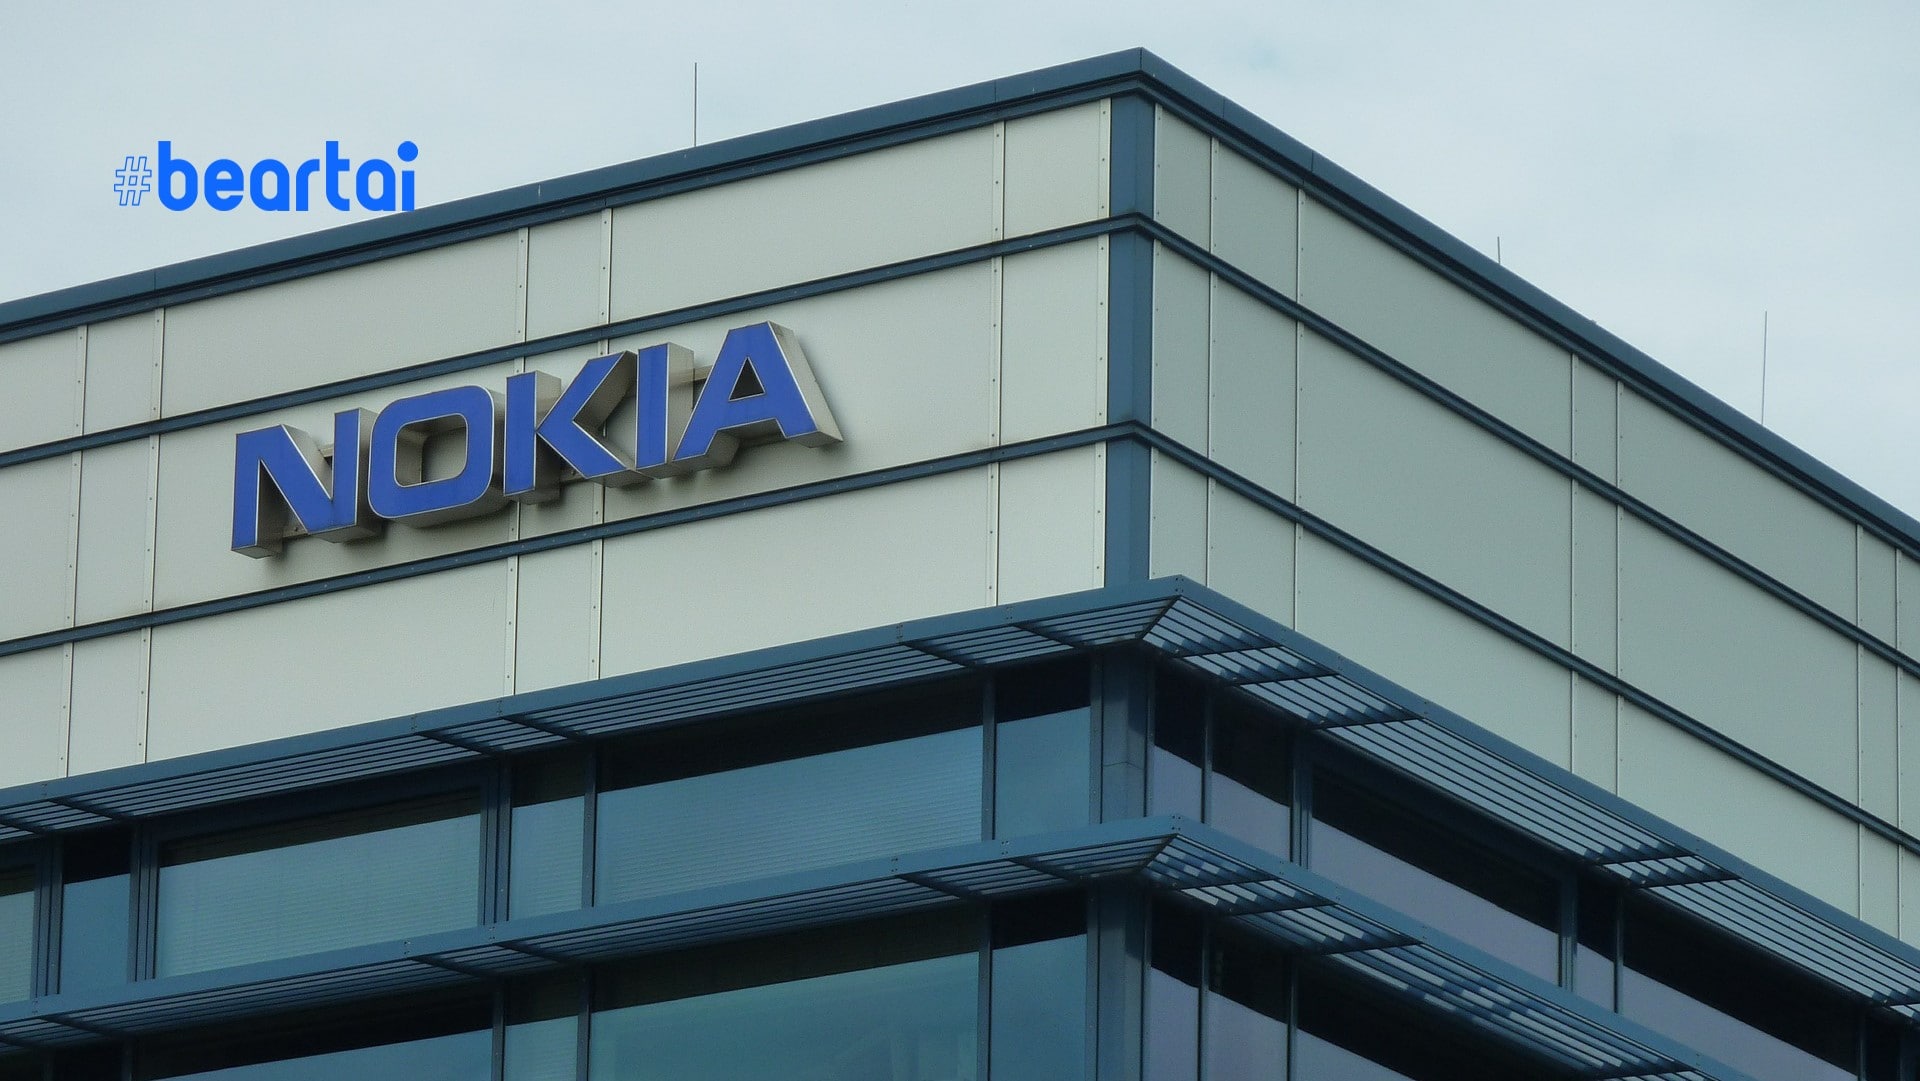 Nokia ได้จัดหา 5G RAN ให้กับ BT ผู้ให้บริการมือถือรายใหญ่ที่สุดของอังกฤษ